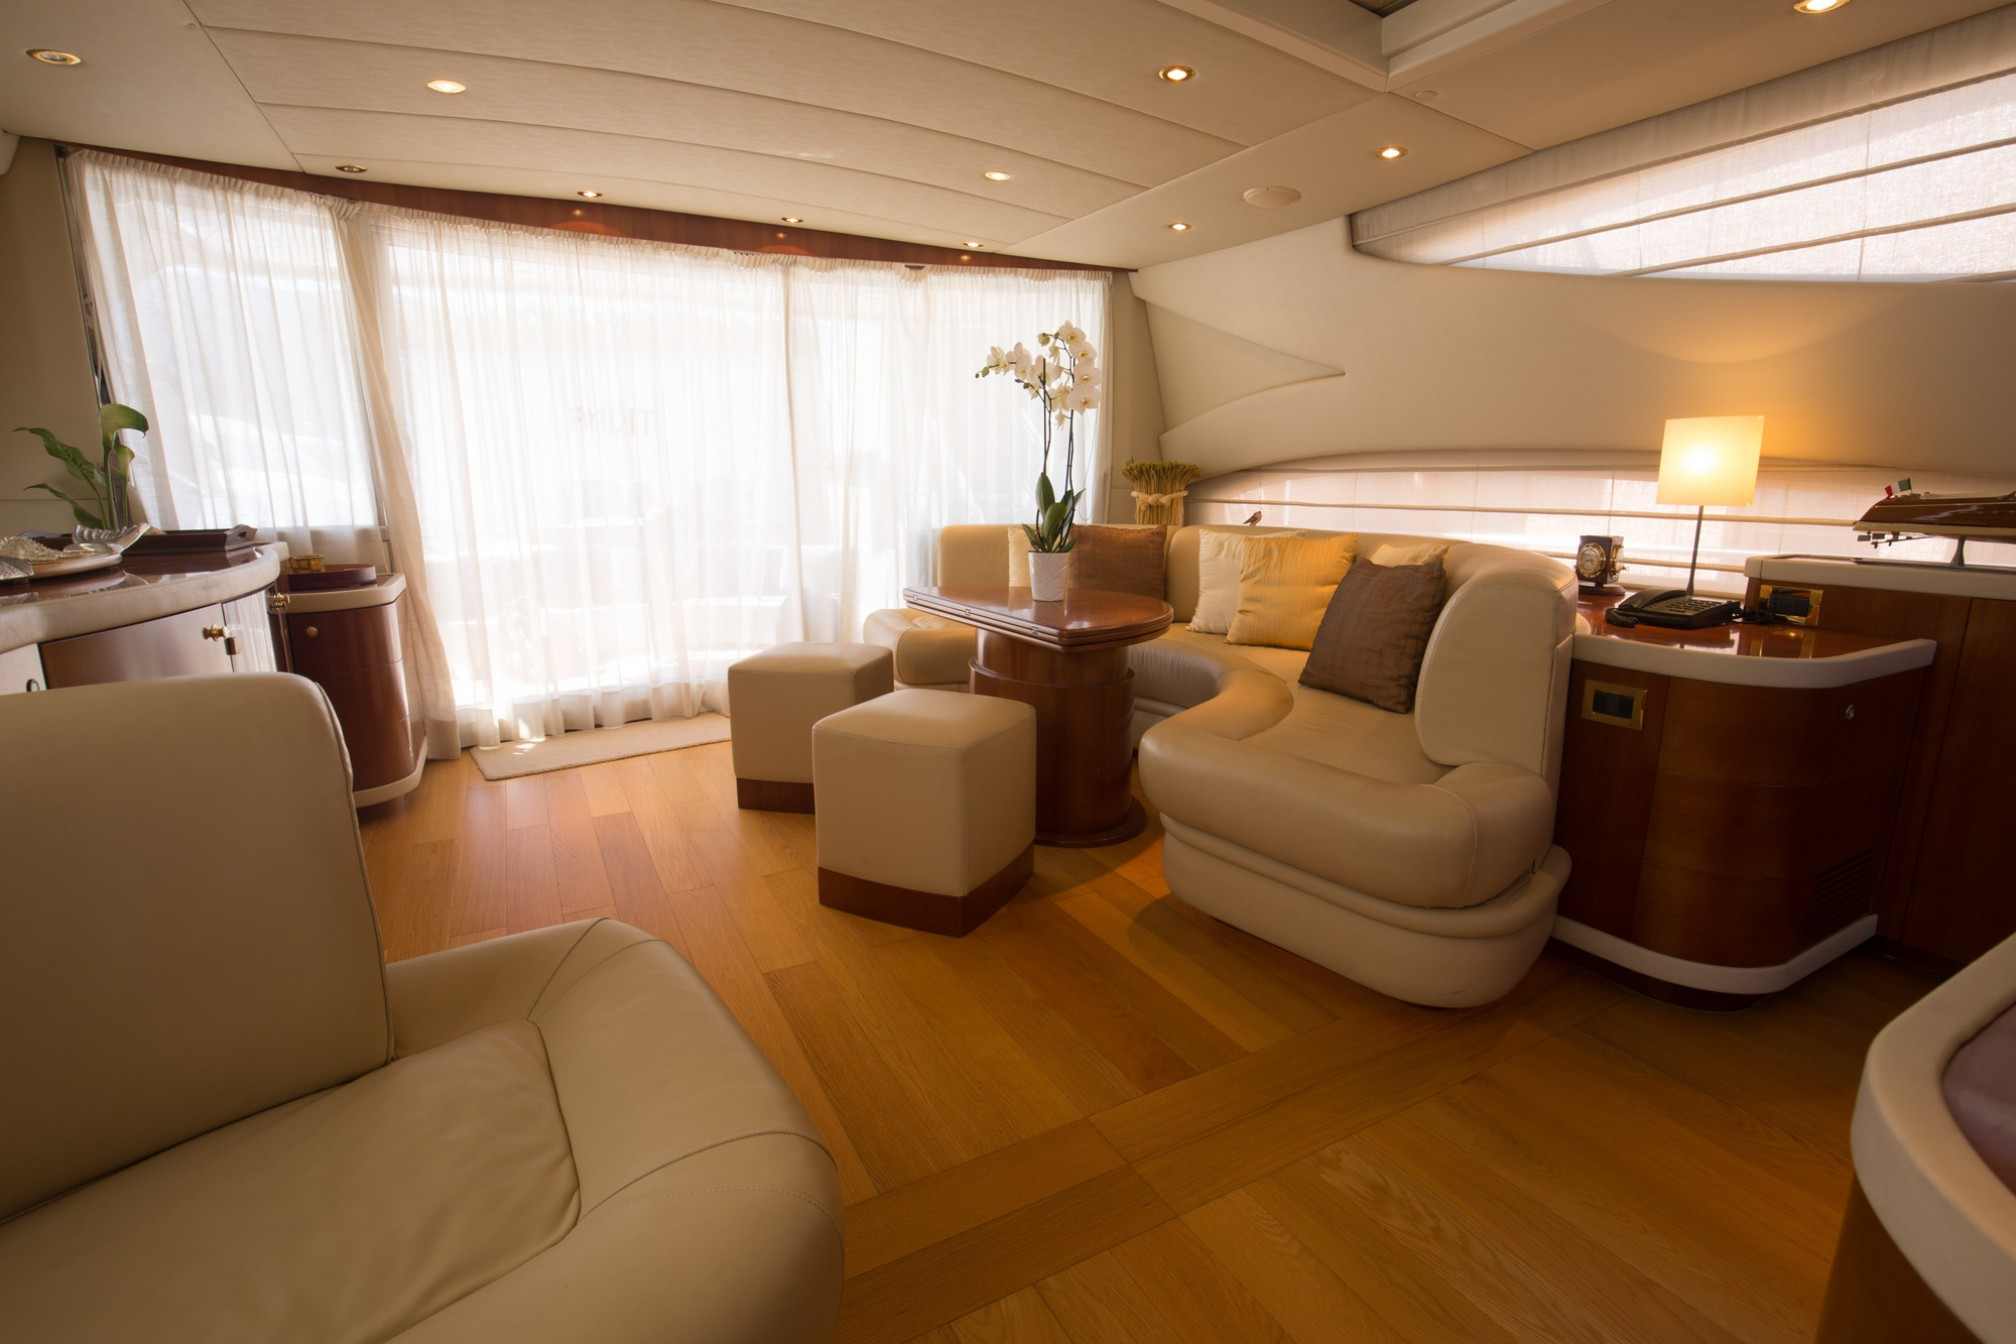  Alfamarine 78 charter yacht salon